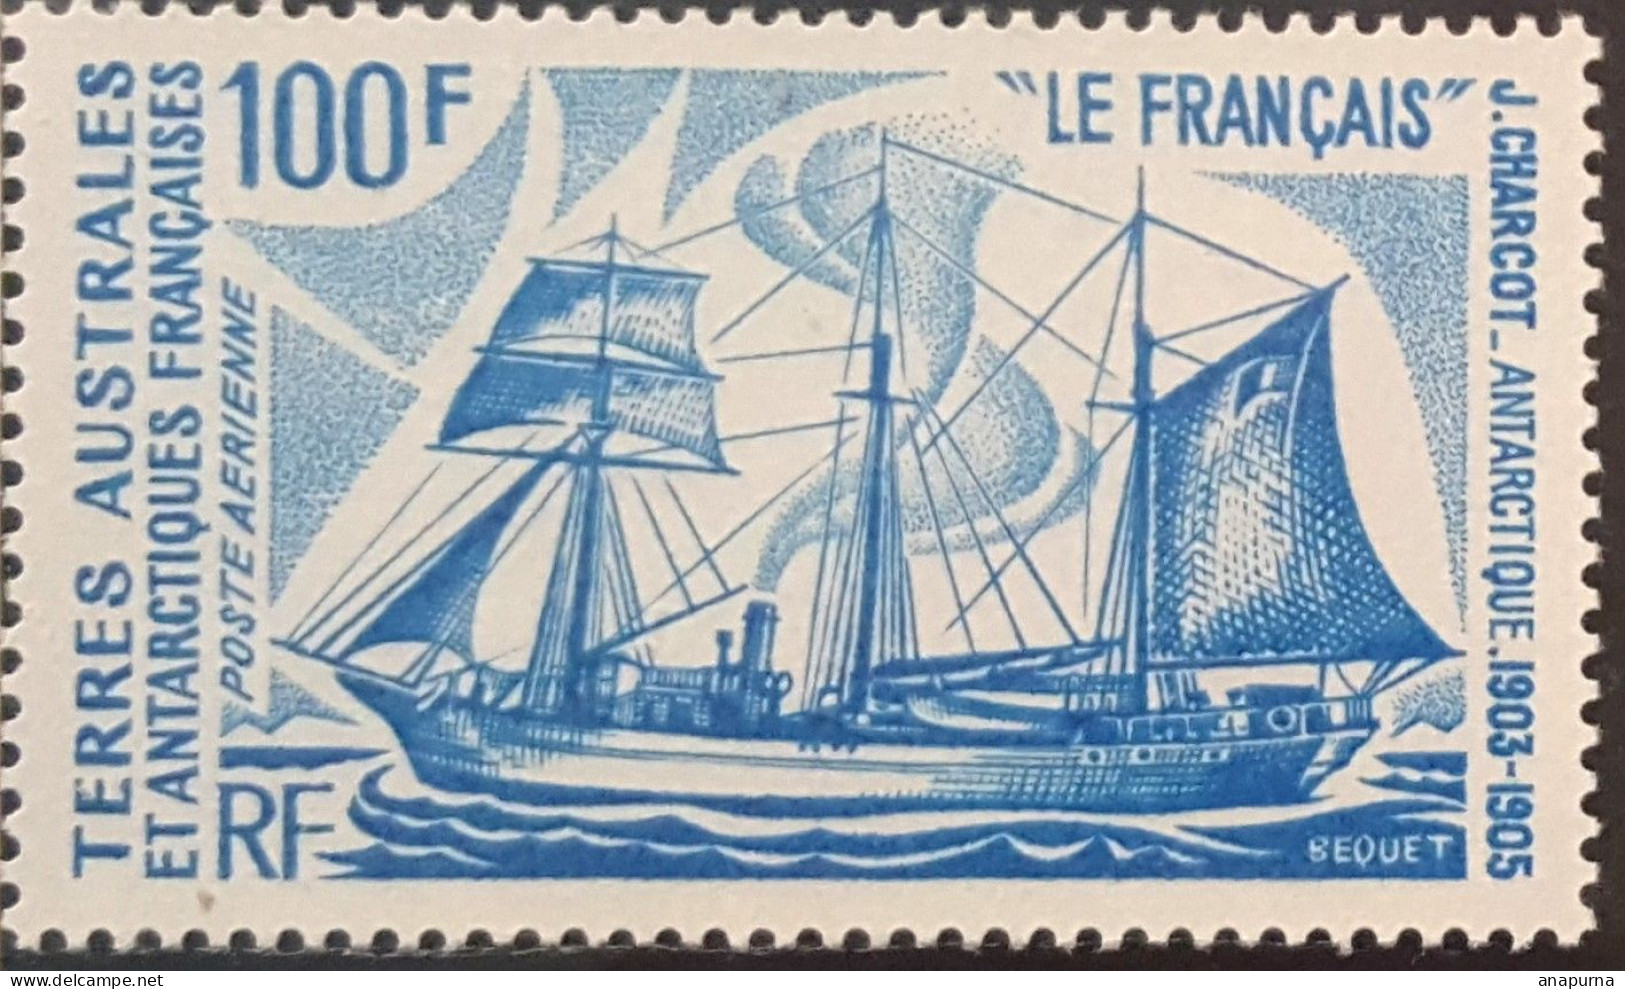 2 Timbres,  Bateaux D'expéditions Antarctiques De J.Charcot, Le Français, Le Pourquoi Pas?,38 Et 39, Sans Charnière - Neufs